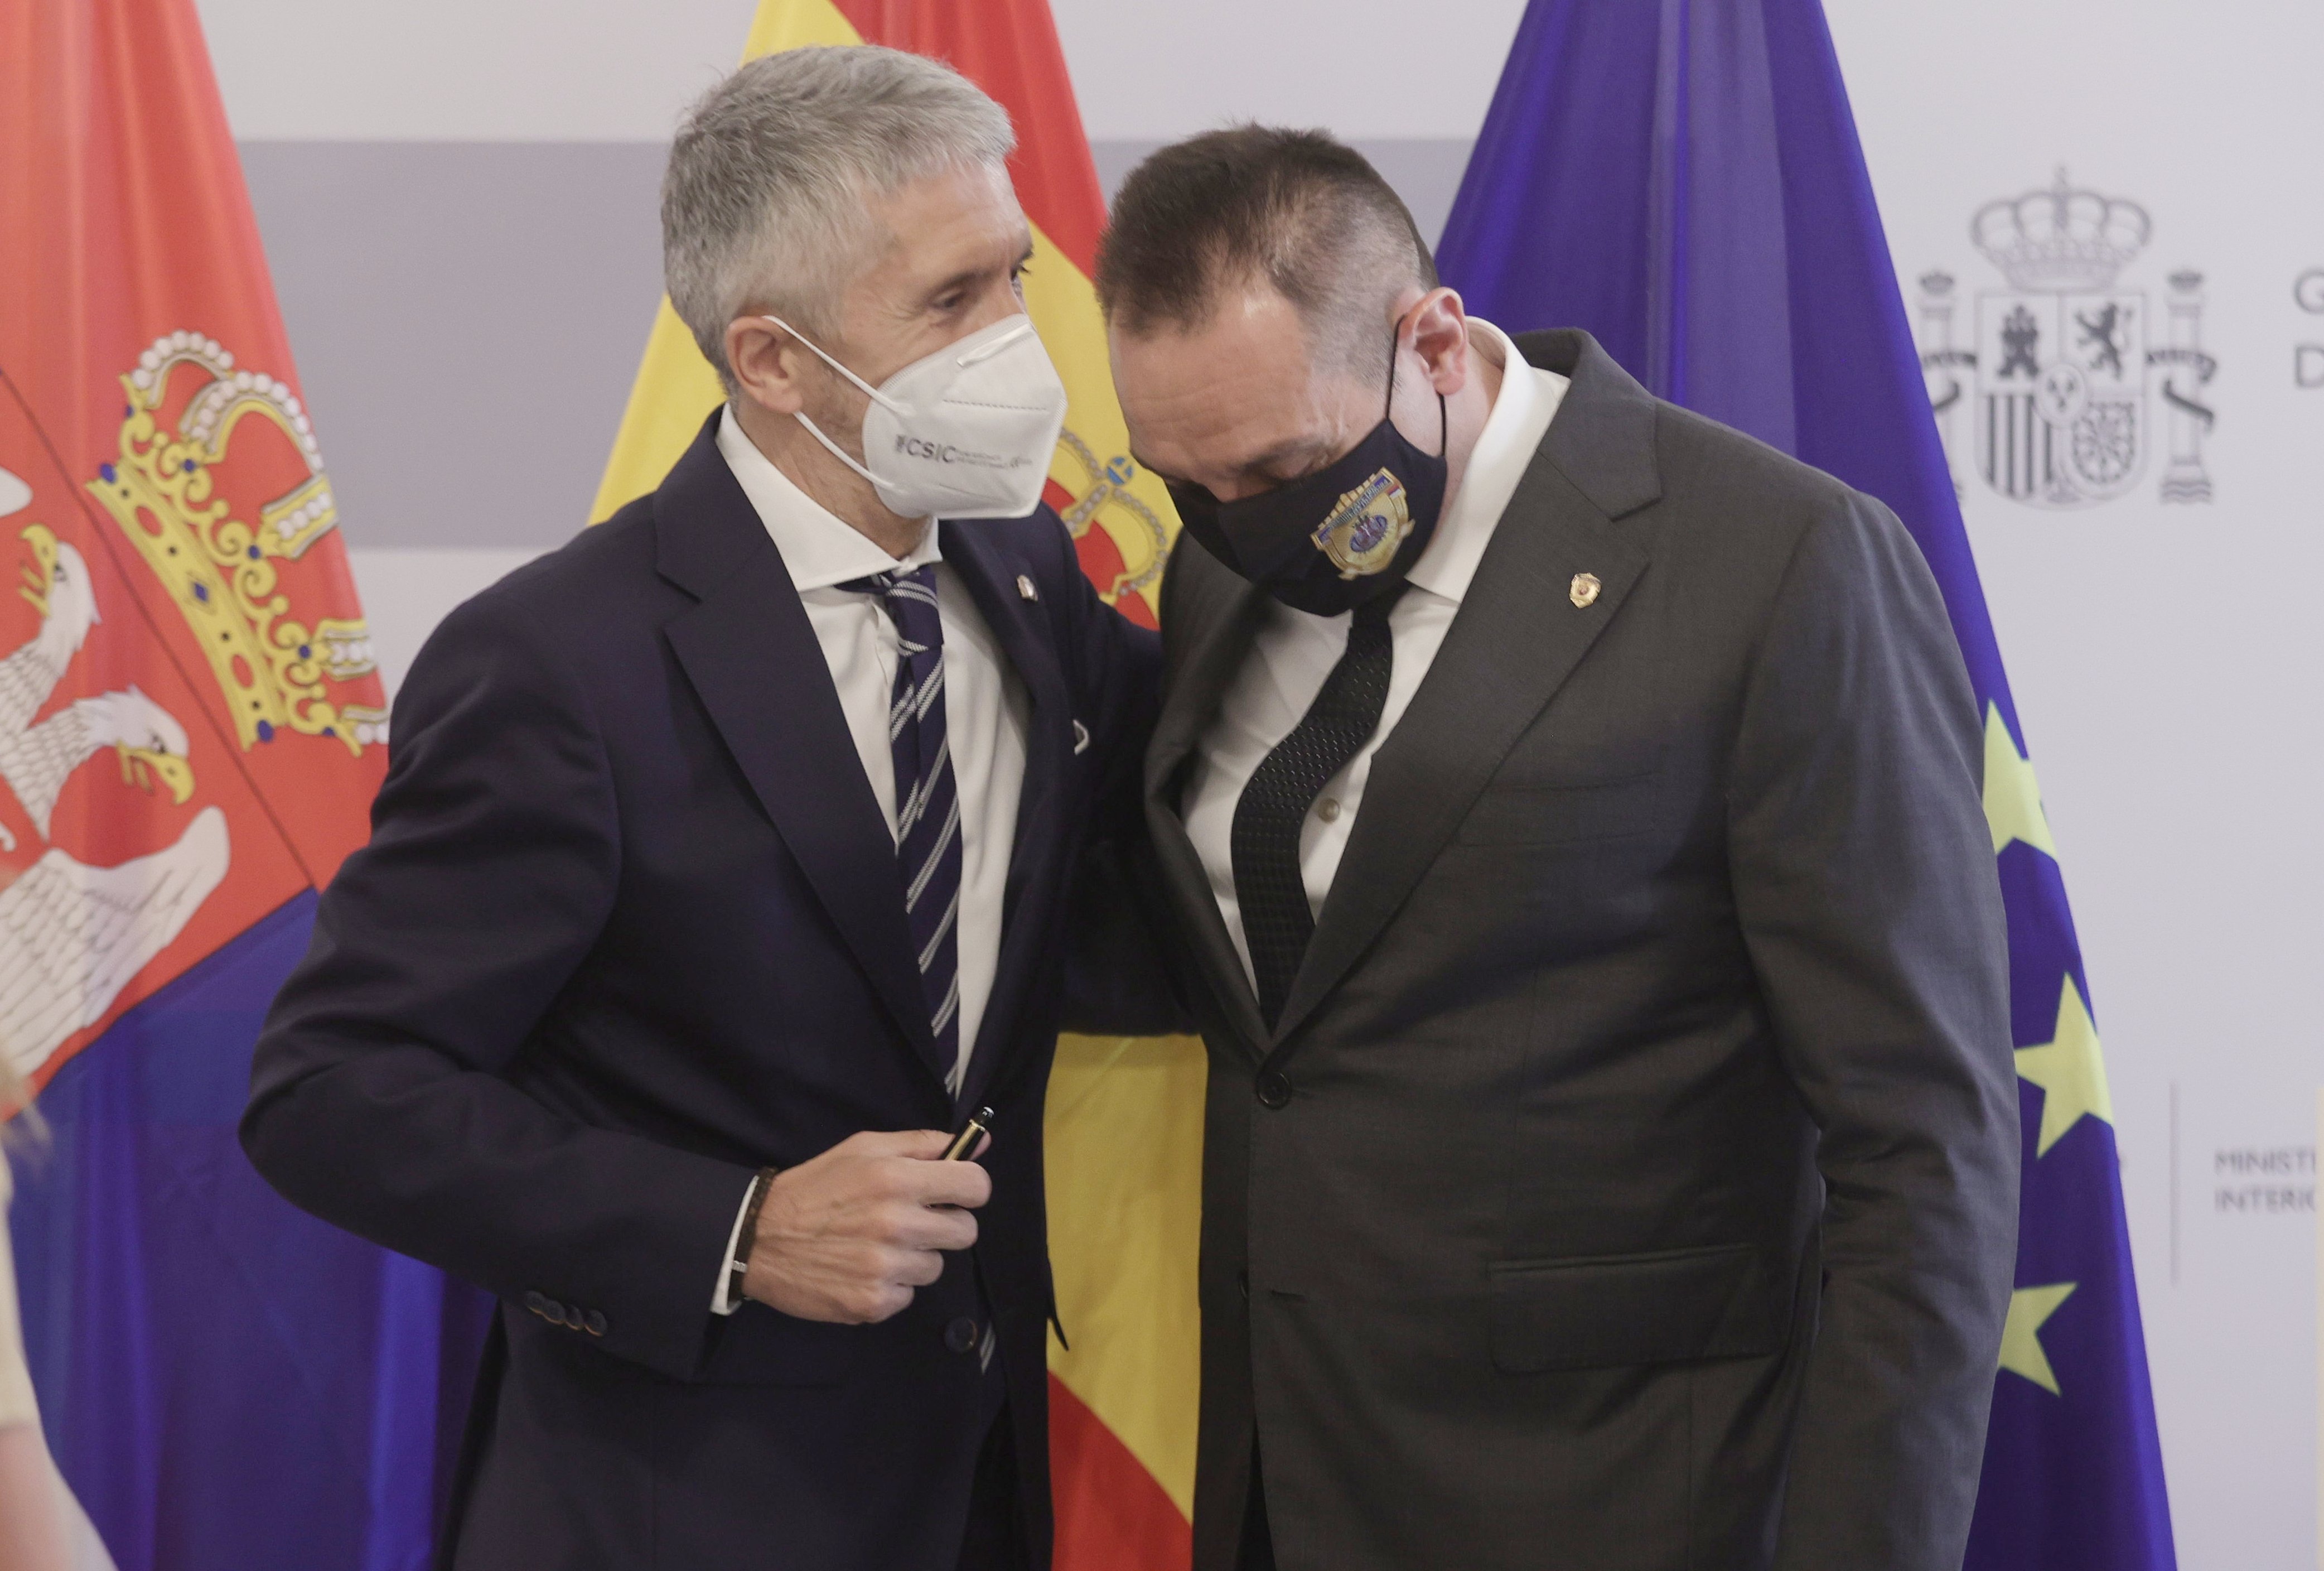 EuropaPress 3850060 ministro interior fernando grande marlaska homologo serbio aleksandar vulin